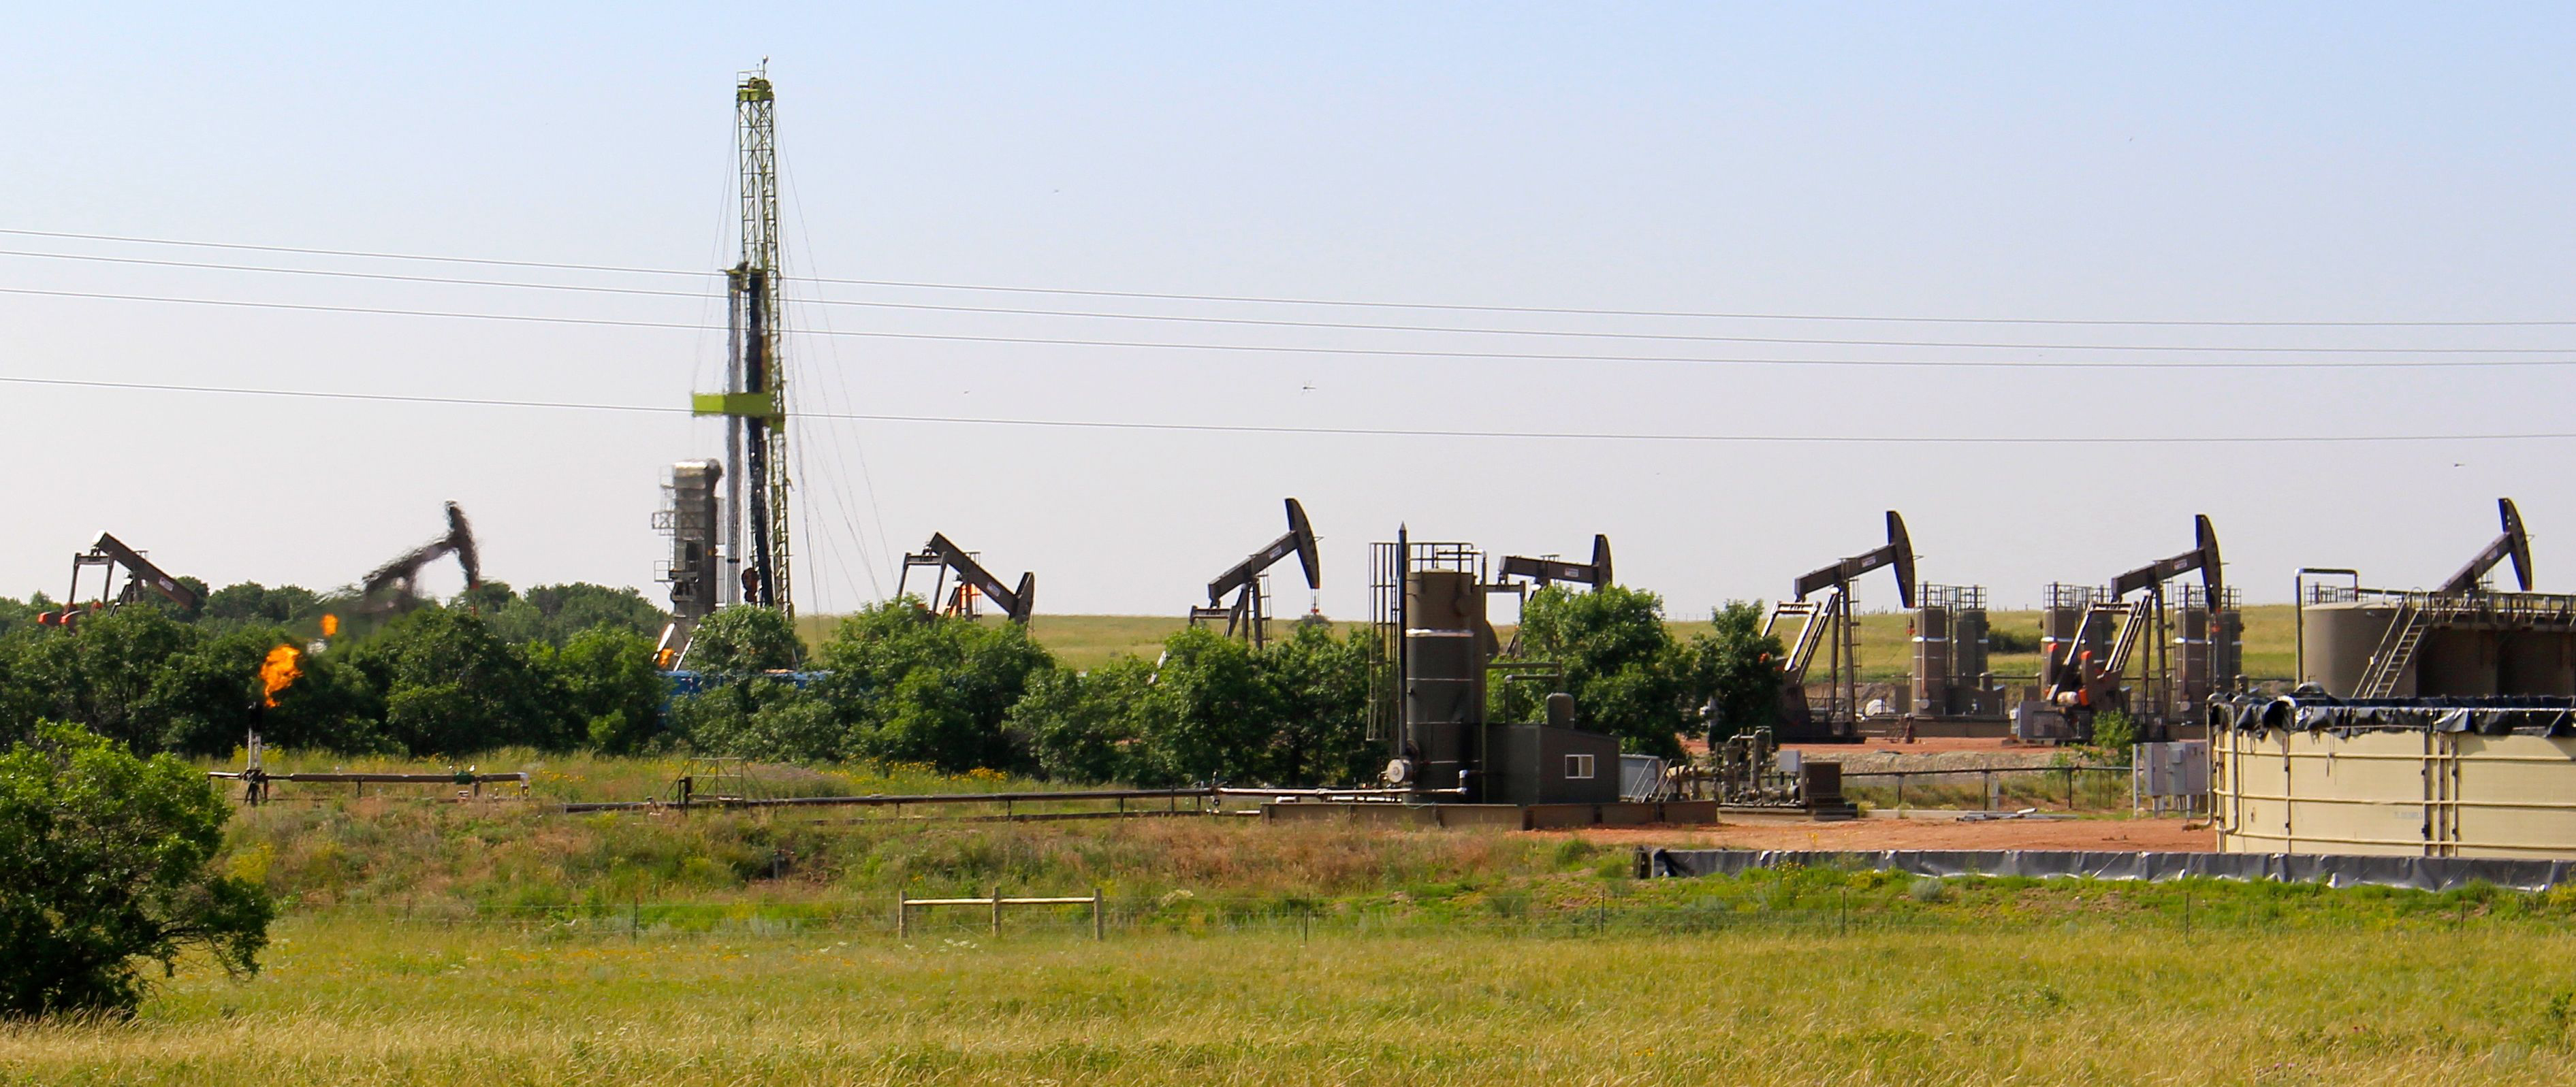 Oil rigs on the Fort Berthold Reservation landscape. (Photo courtesy of Avner Vengosh)